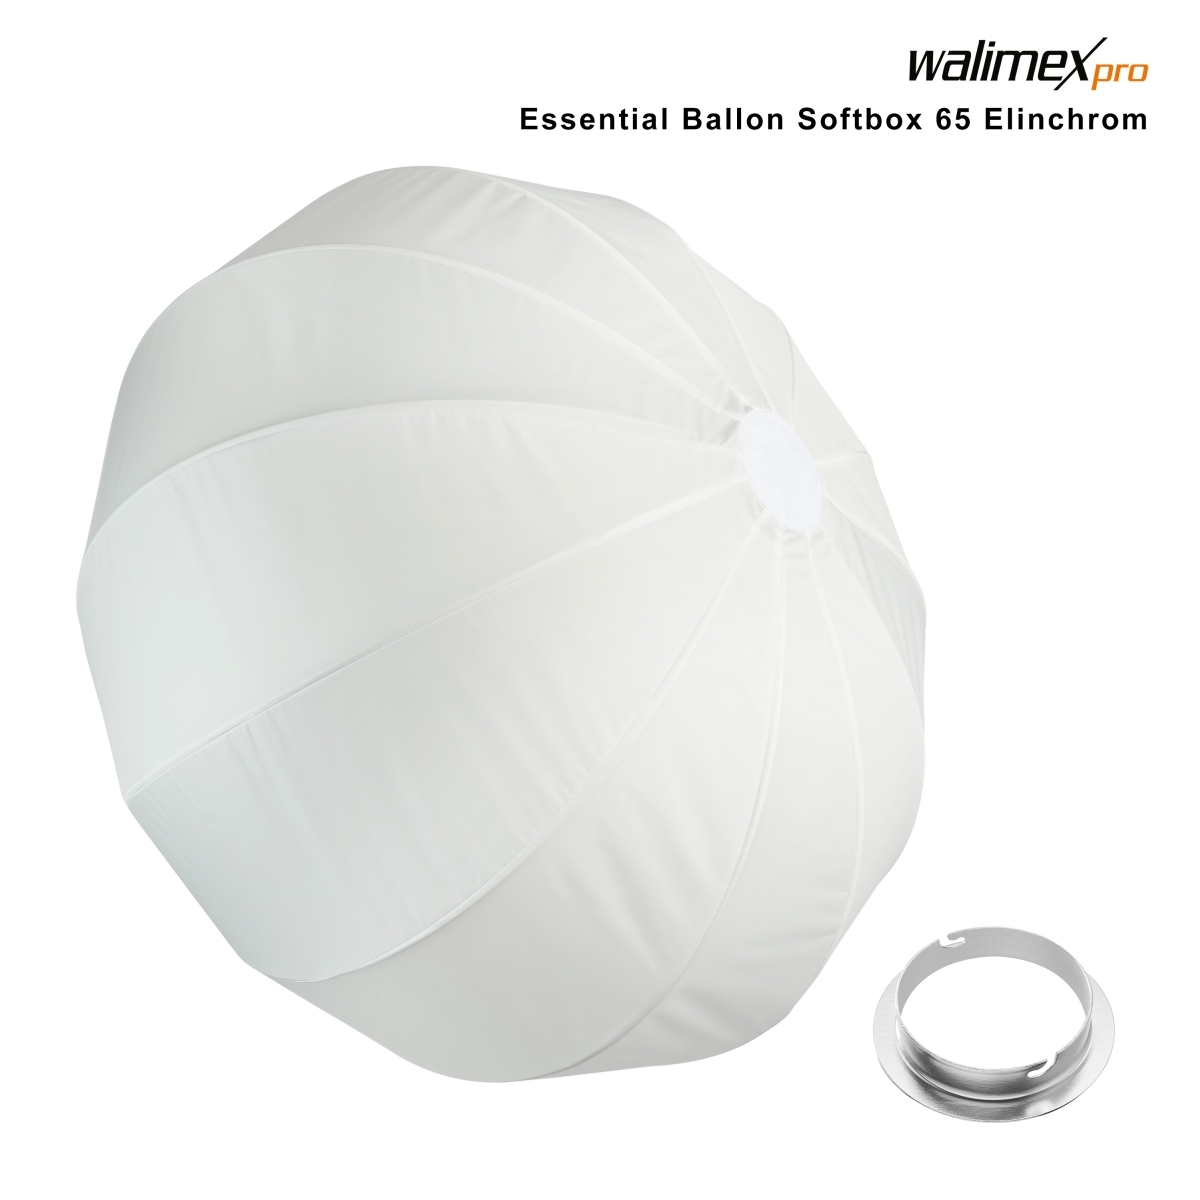 Walimex pro Essential Ballon Softbox 65 Elinchrom